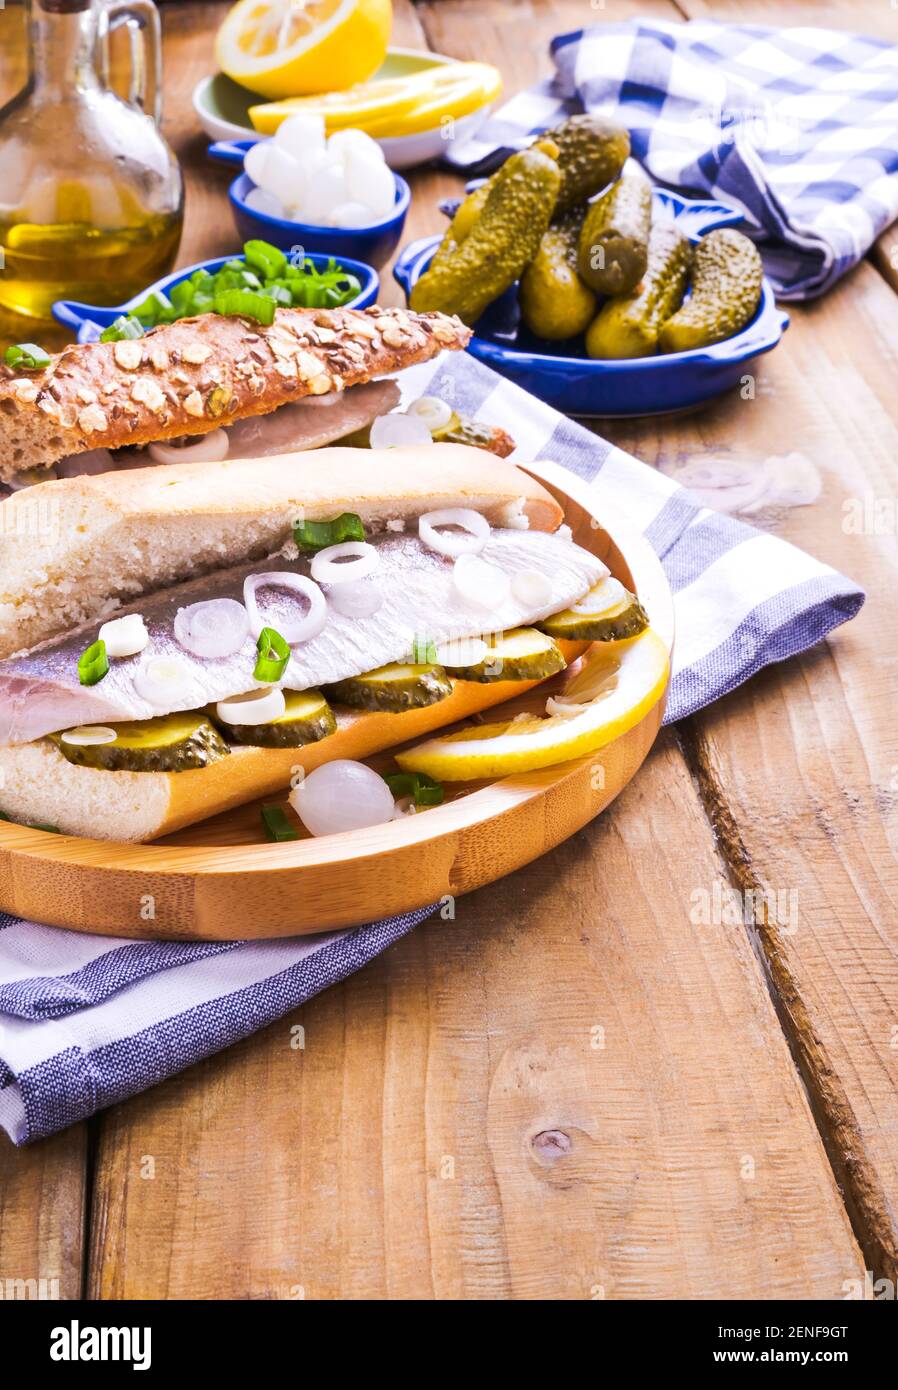 Hareng hollandais dans un sandwich dans un petit pain blanc. Griller avec  du hareng hollandais, des oignons et des cornichons. Hors-d'œuvre rustique  traditionnel avec fruits de mer. Cuisine populaire aux pays-Bas. Copier